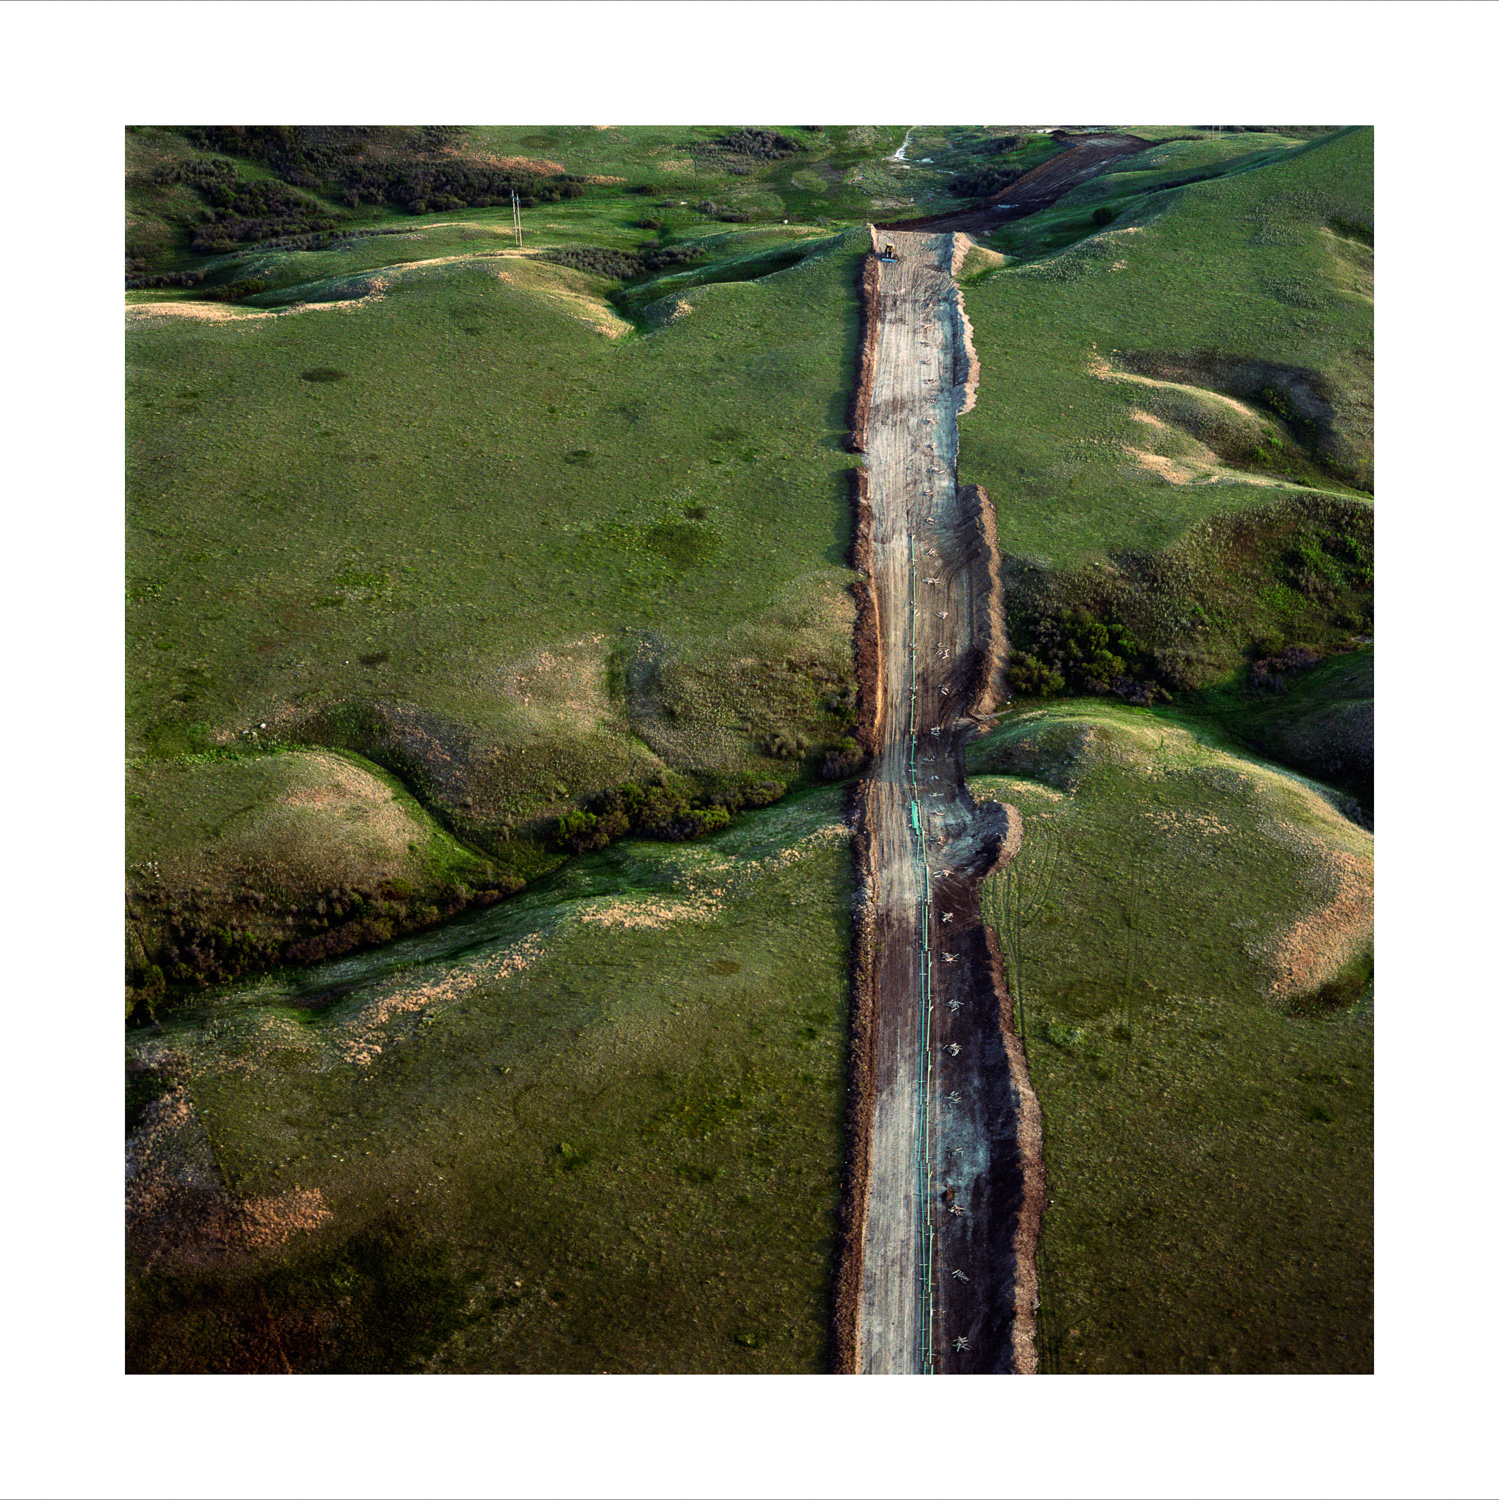 Oil-Pipeline-Prairie-print.jpg